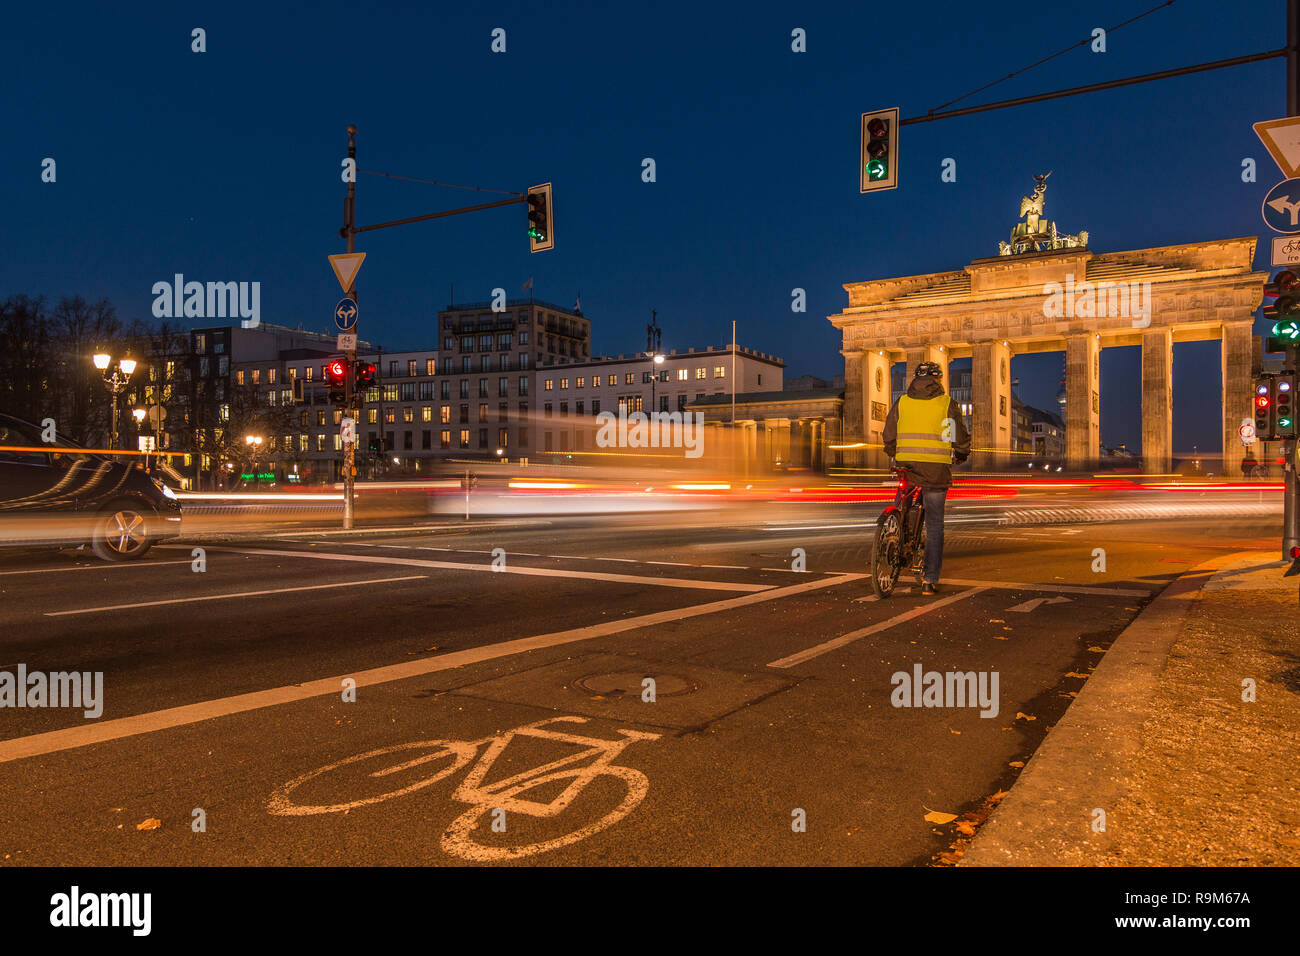 Brandenburger Tor bei Nacht. Rückseite Blick auf der Straße mit Radfahrern und Licht der Autos an Langzeitbelichtung. Radweg mit Vorzeichen auf dem Asphalt. Stockfoto